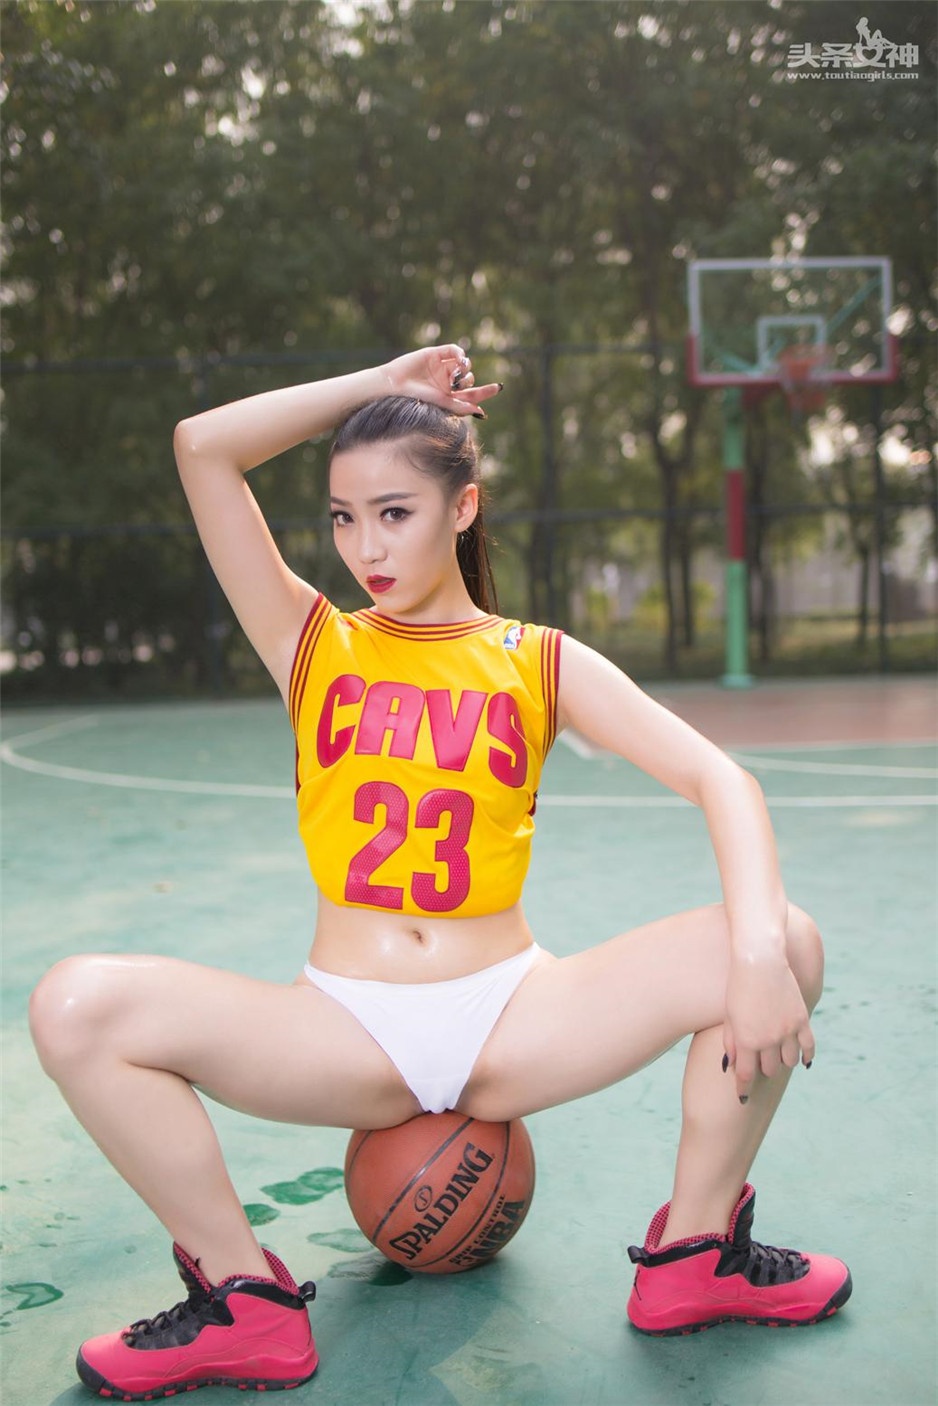 马尾美女瑷珍珍性感篮球宝贝图片